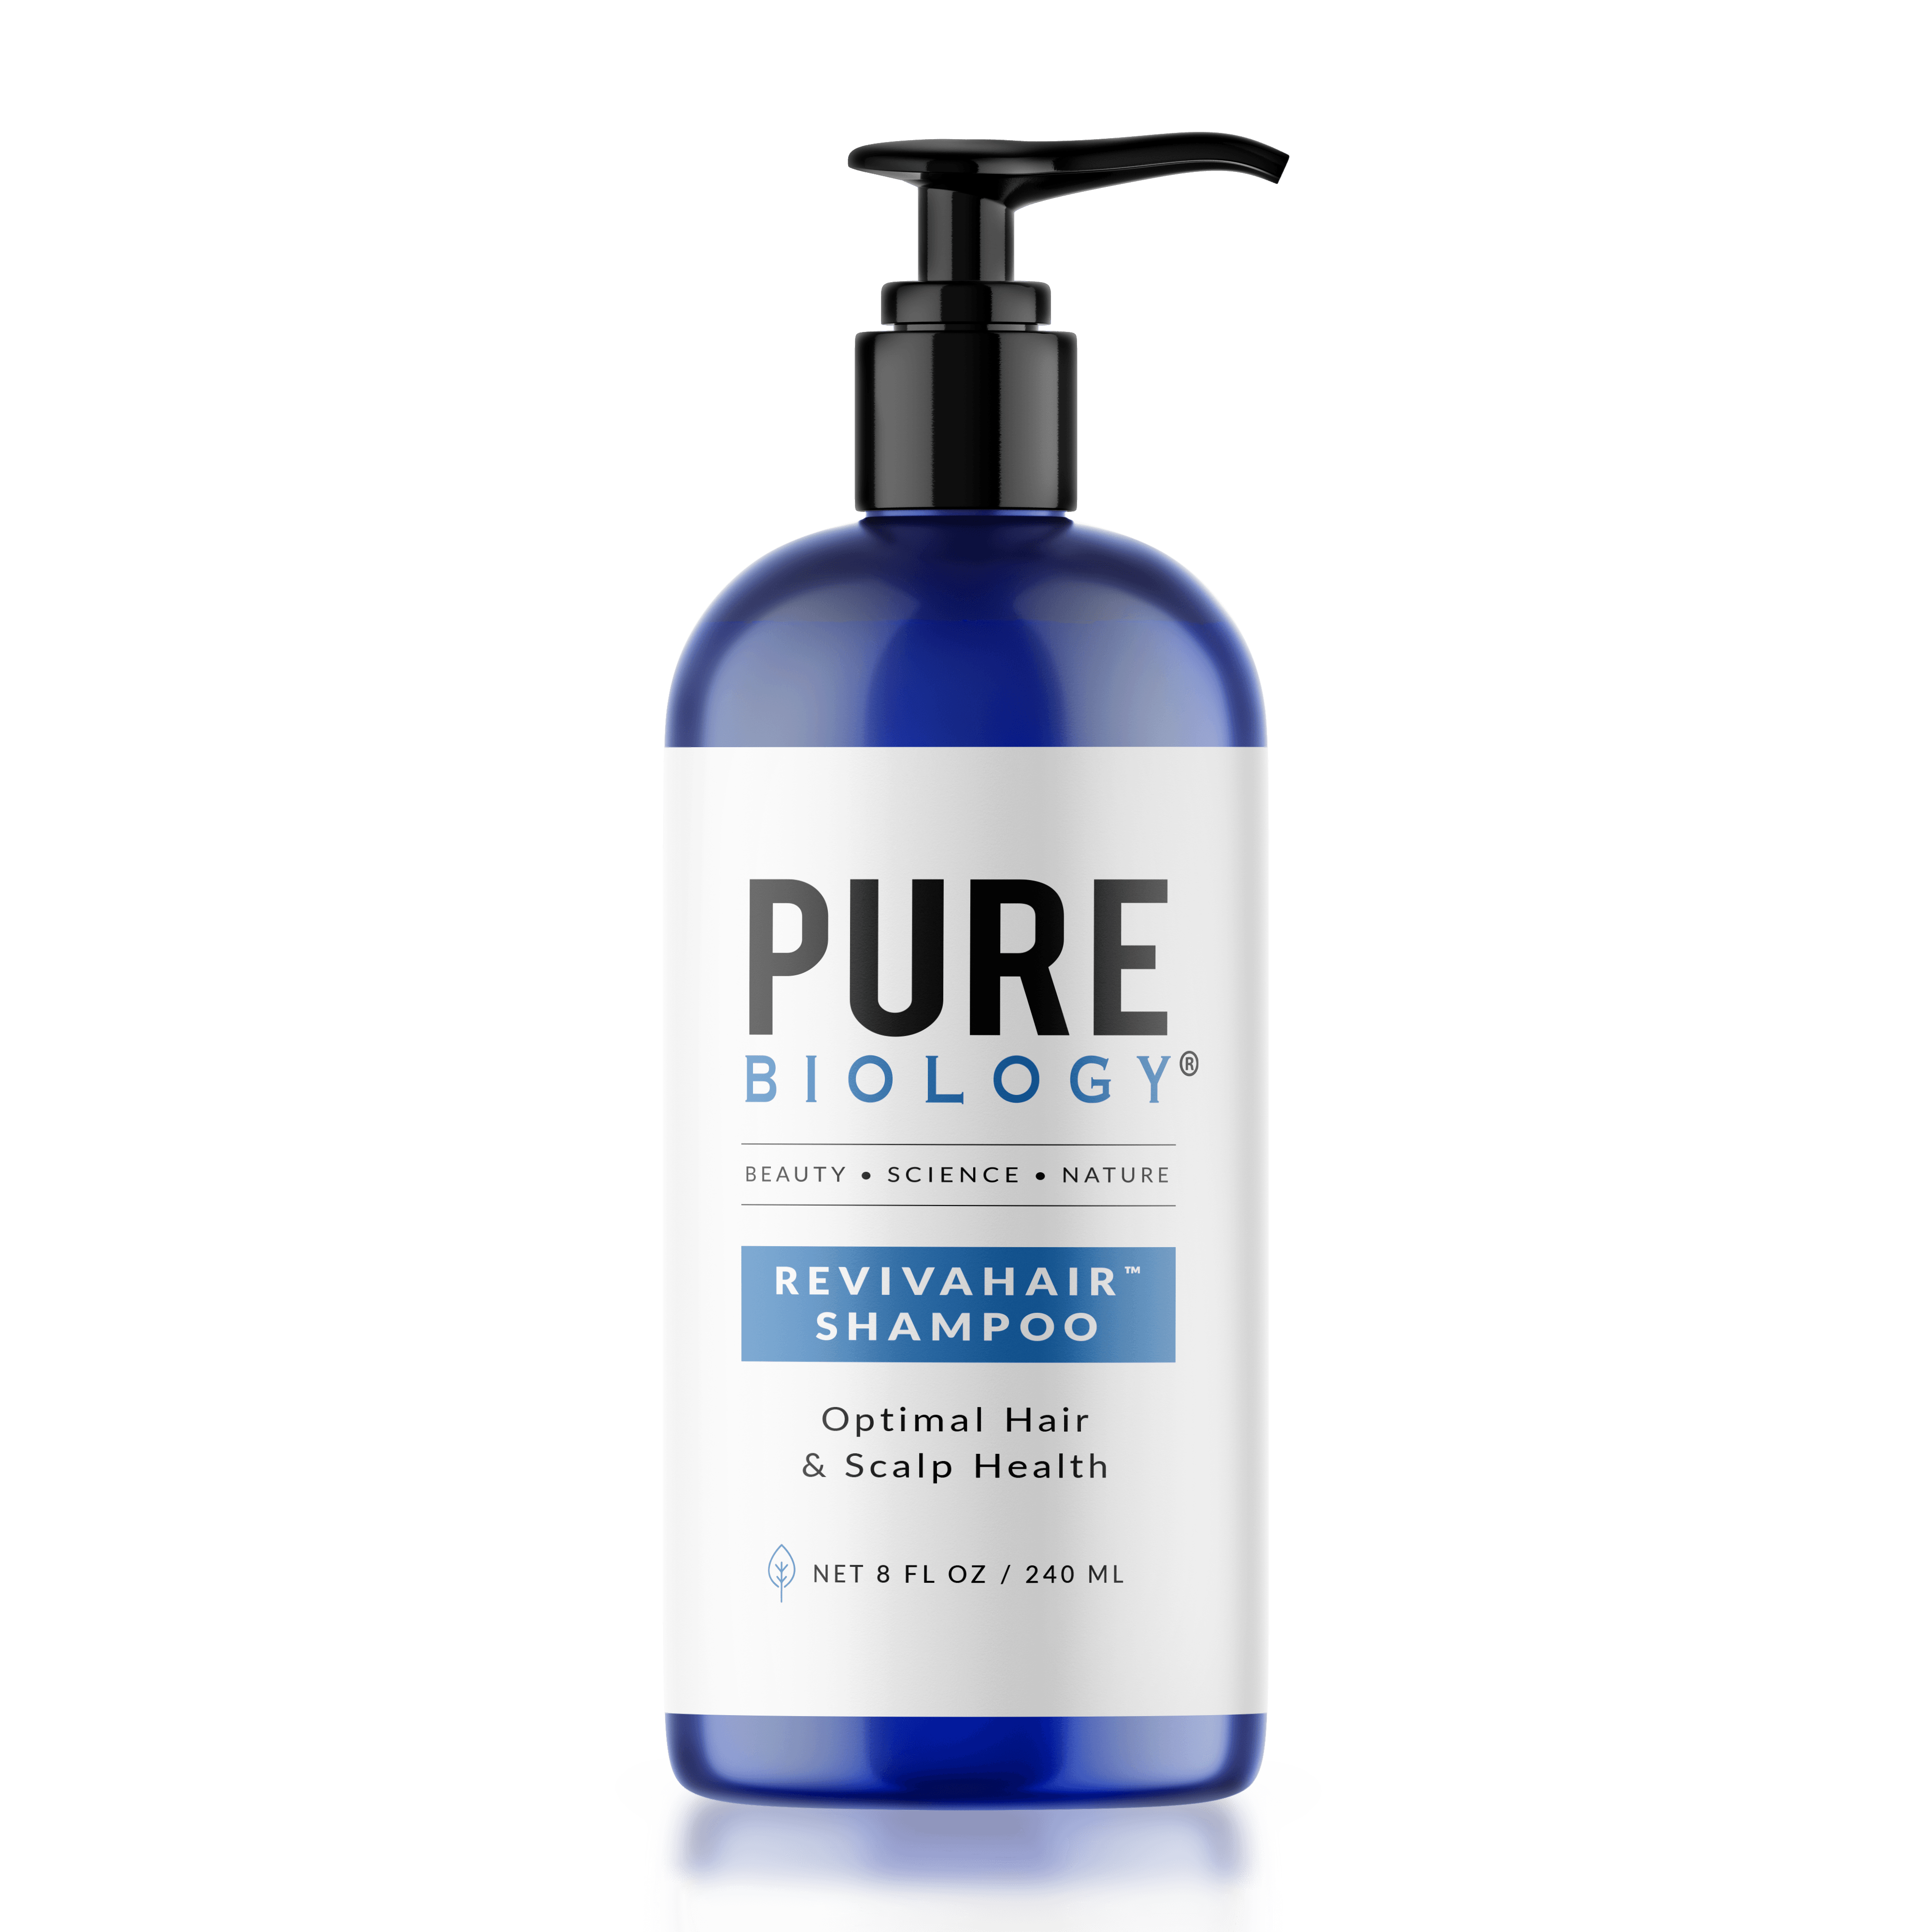 Pure Biology Revivahair Shampoo